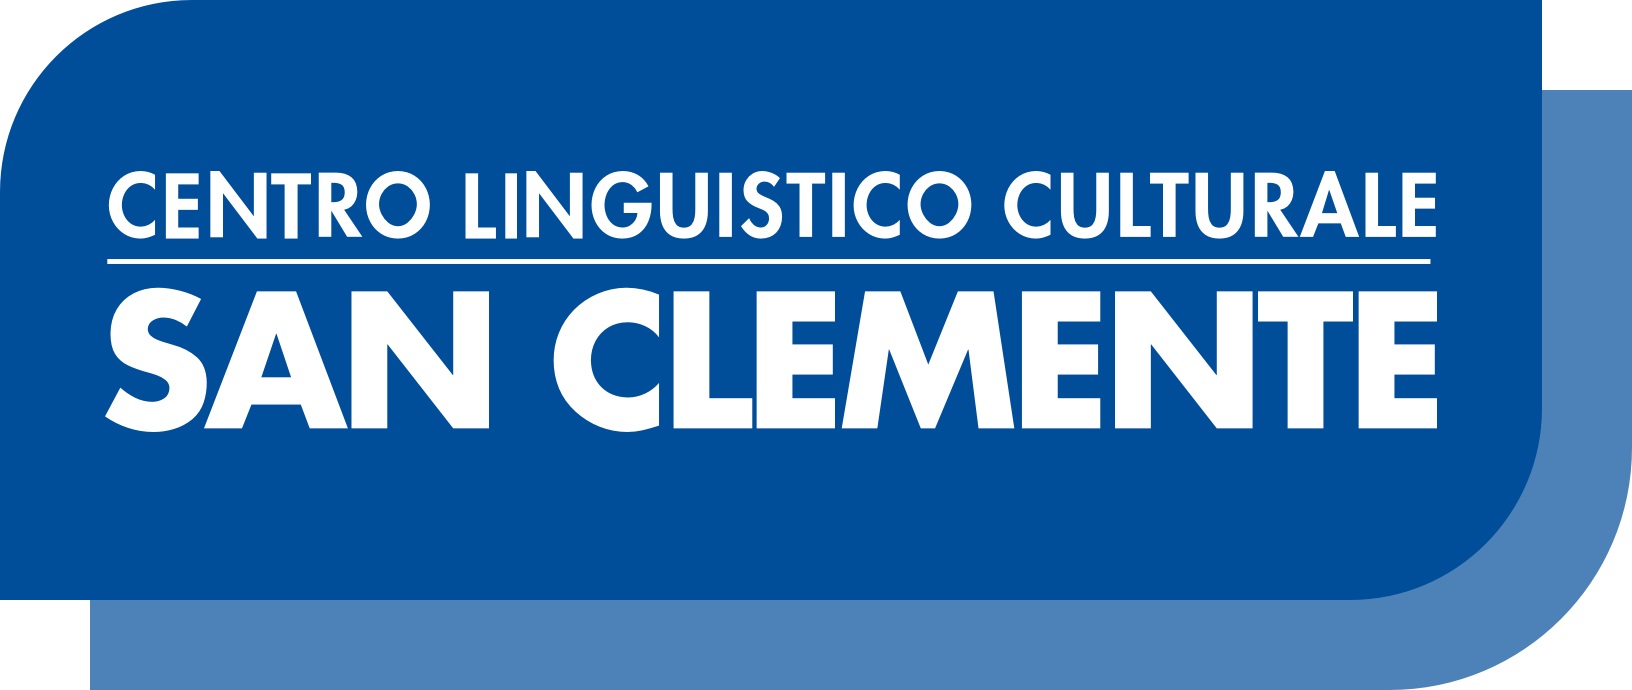 Centro Linguistico Culturale San Clemente - Brescia 